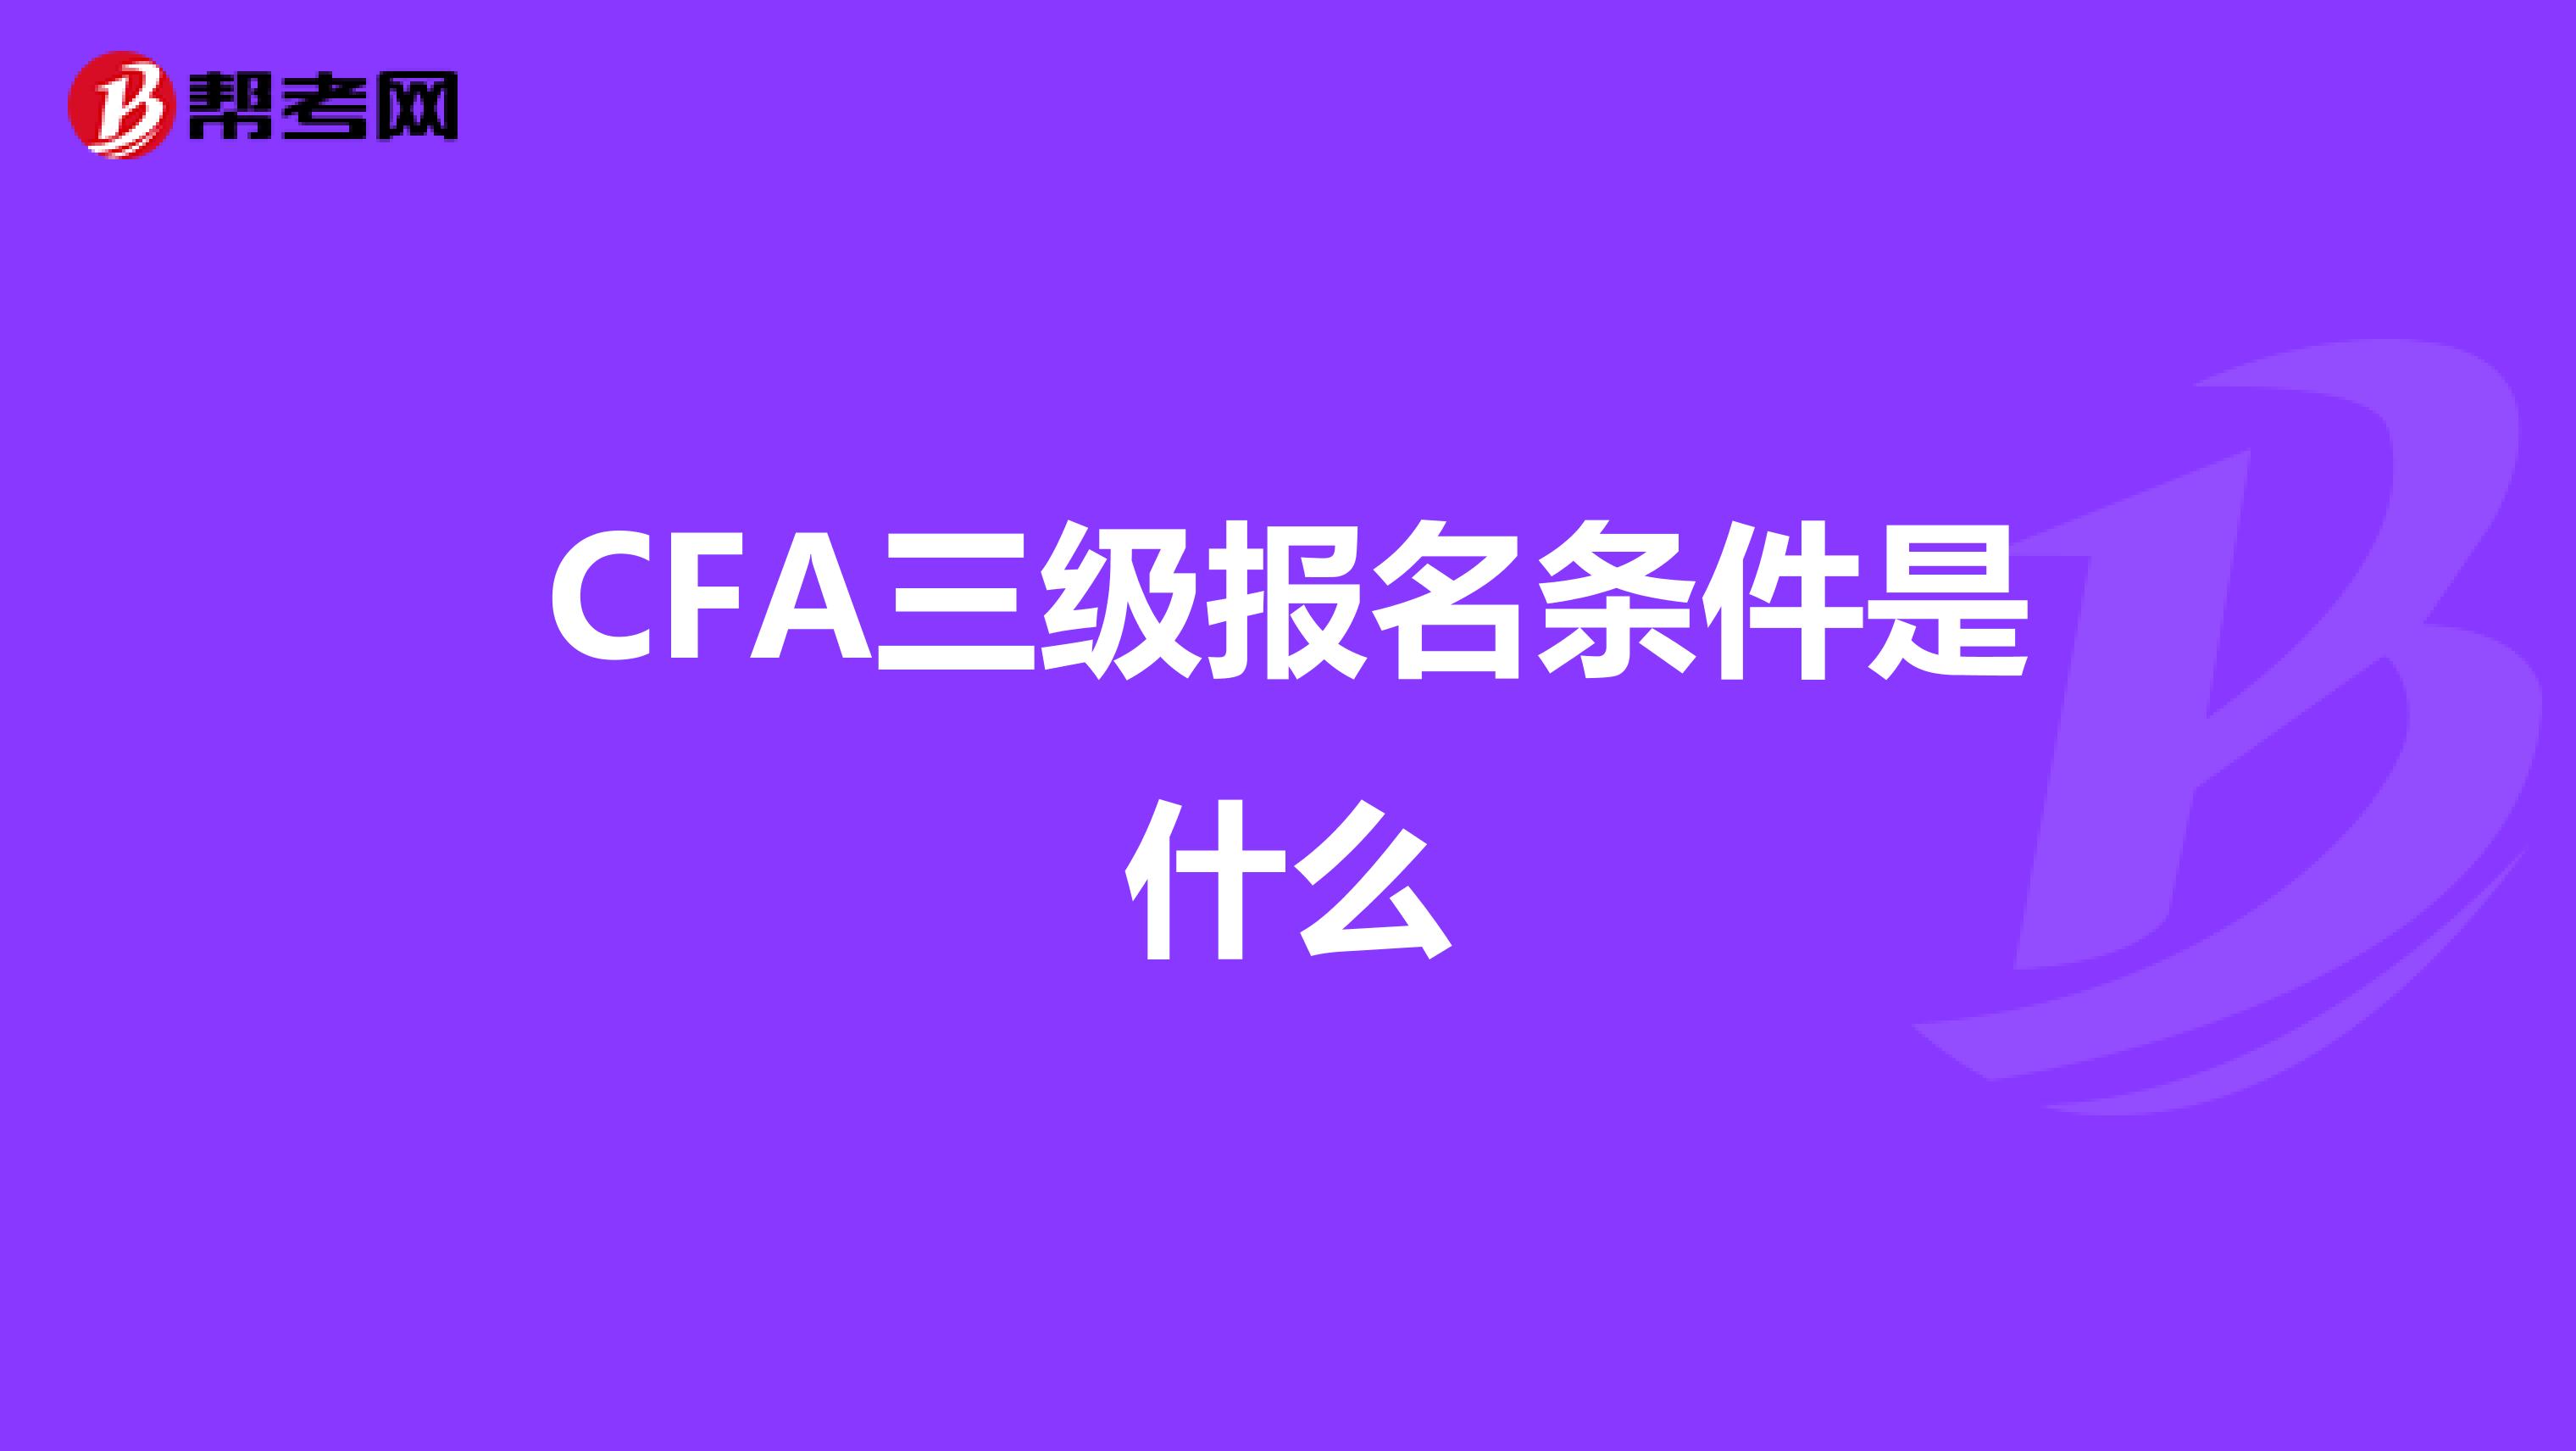 CFA三级报名条件是什么